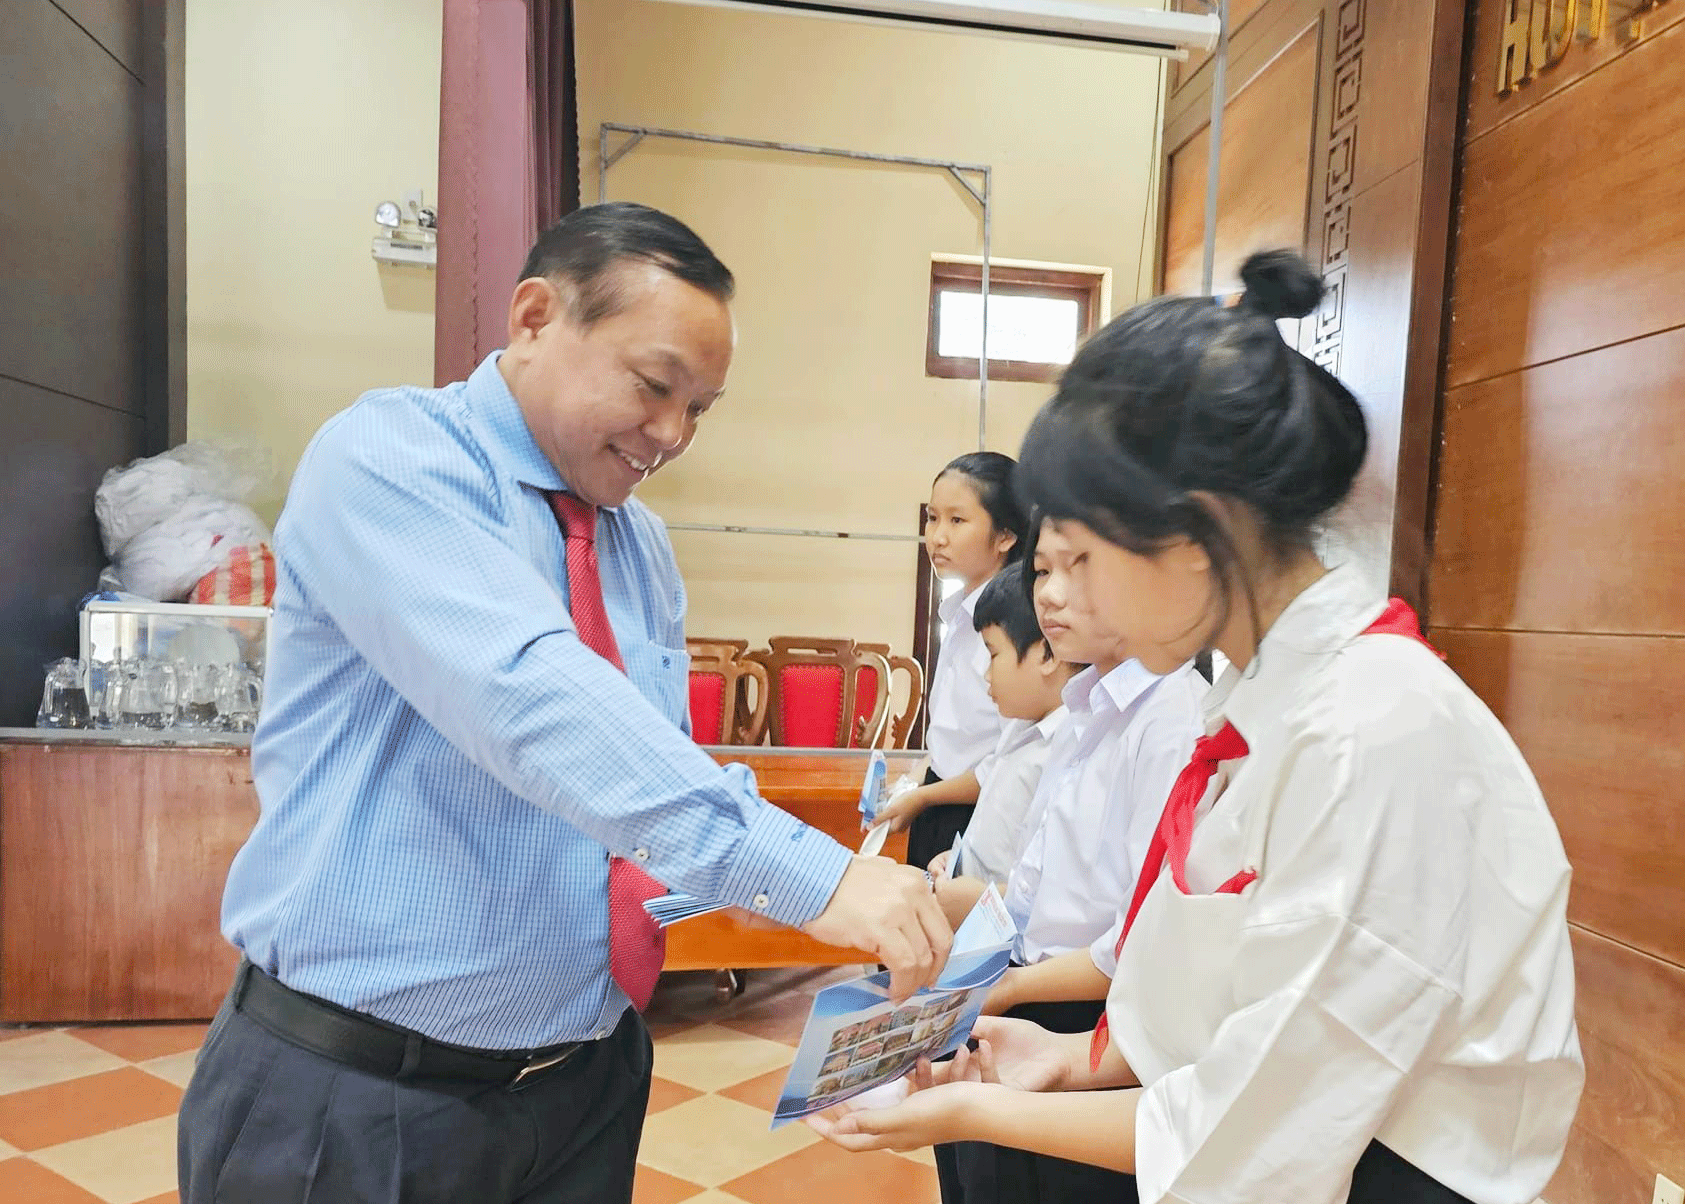 Tiến sĩ - Luật sư Nguyễn Tiến Dũng trao học bổng cho học sinh quê nhà. Ảnh: PHAN VINH